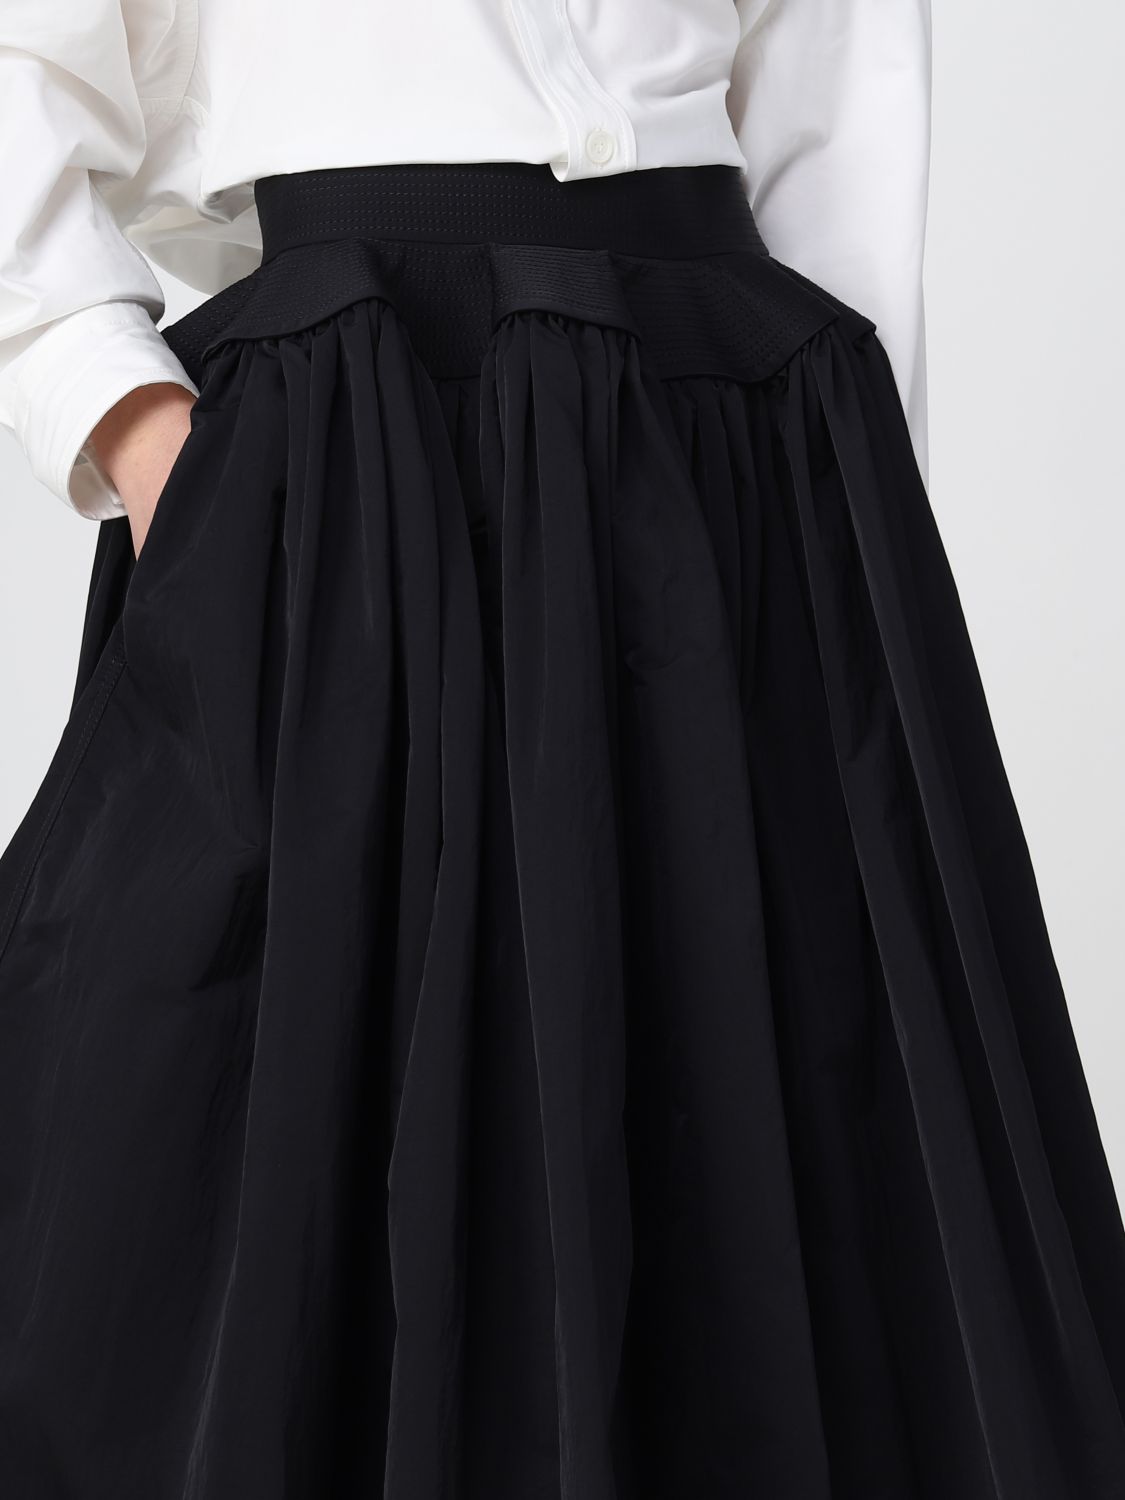 BOTTEGA VENETA: skirt for woman - Black | Bottega Veneta skirt ...